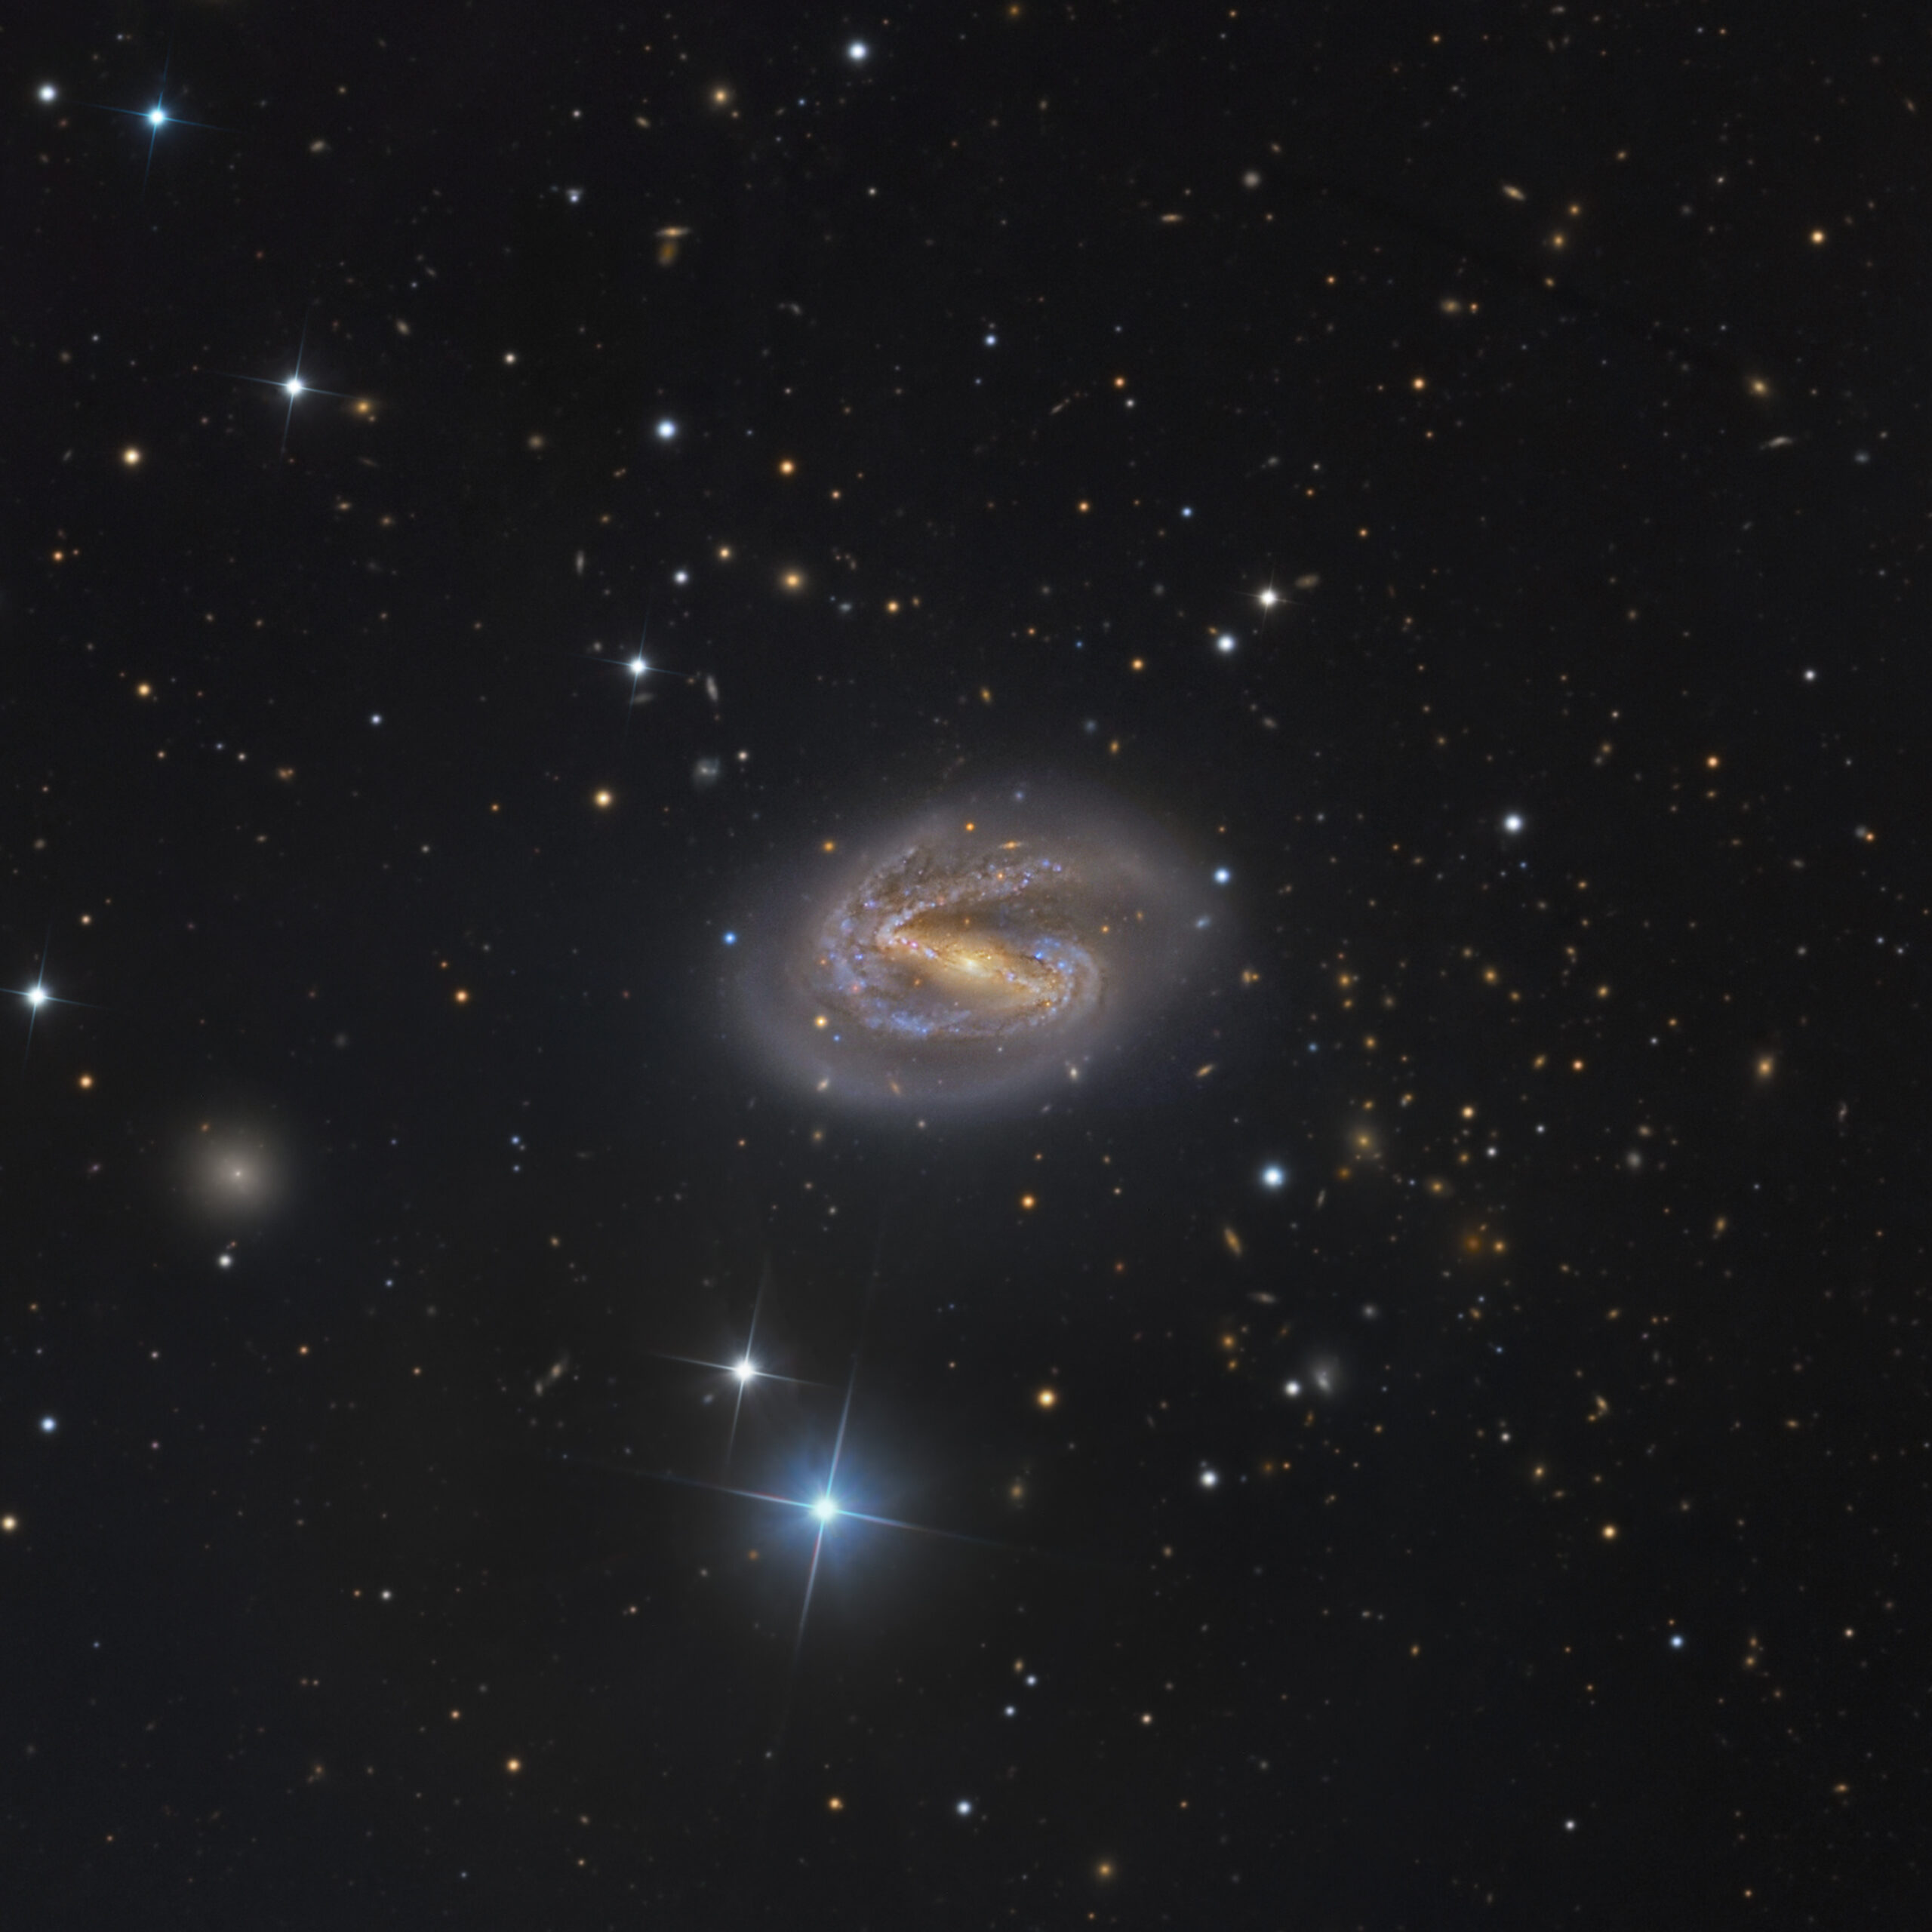 NGC 7513